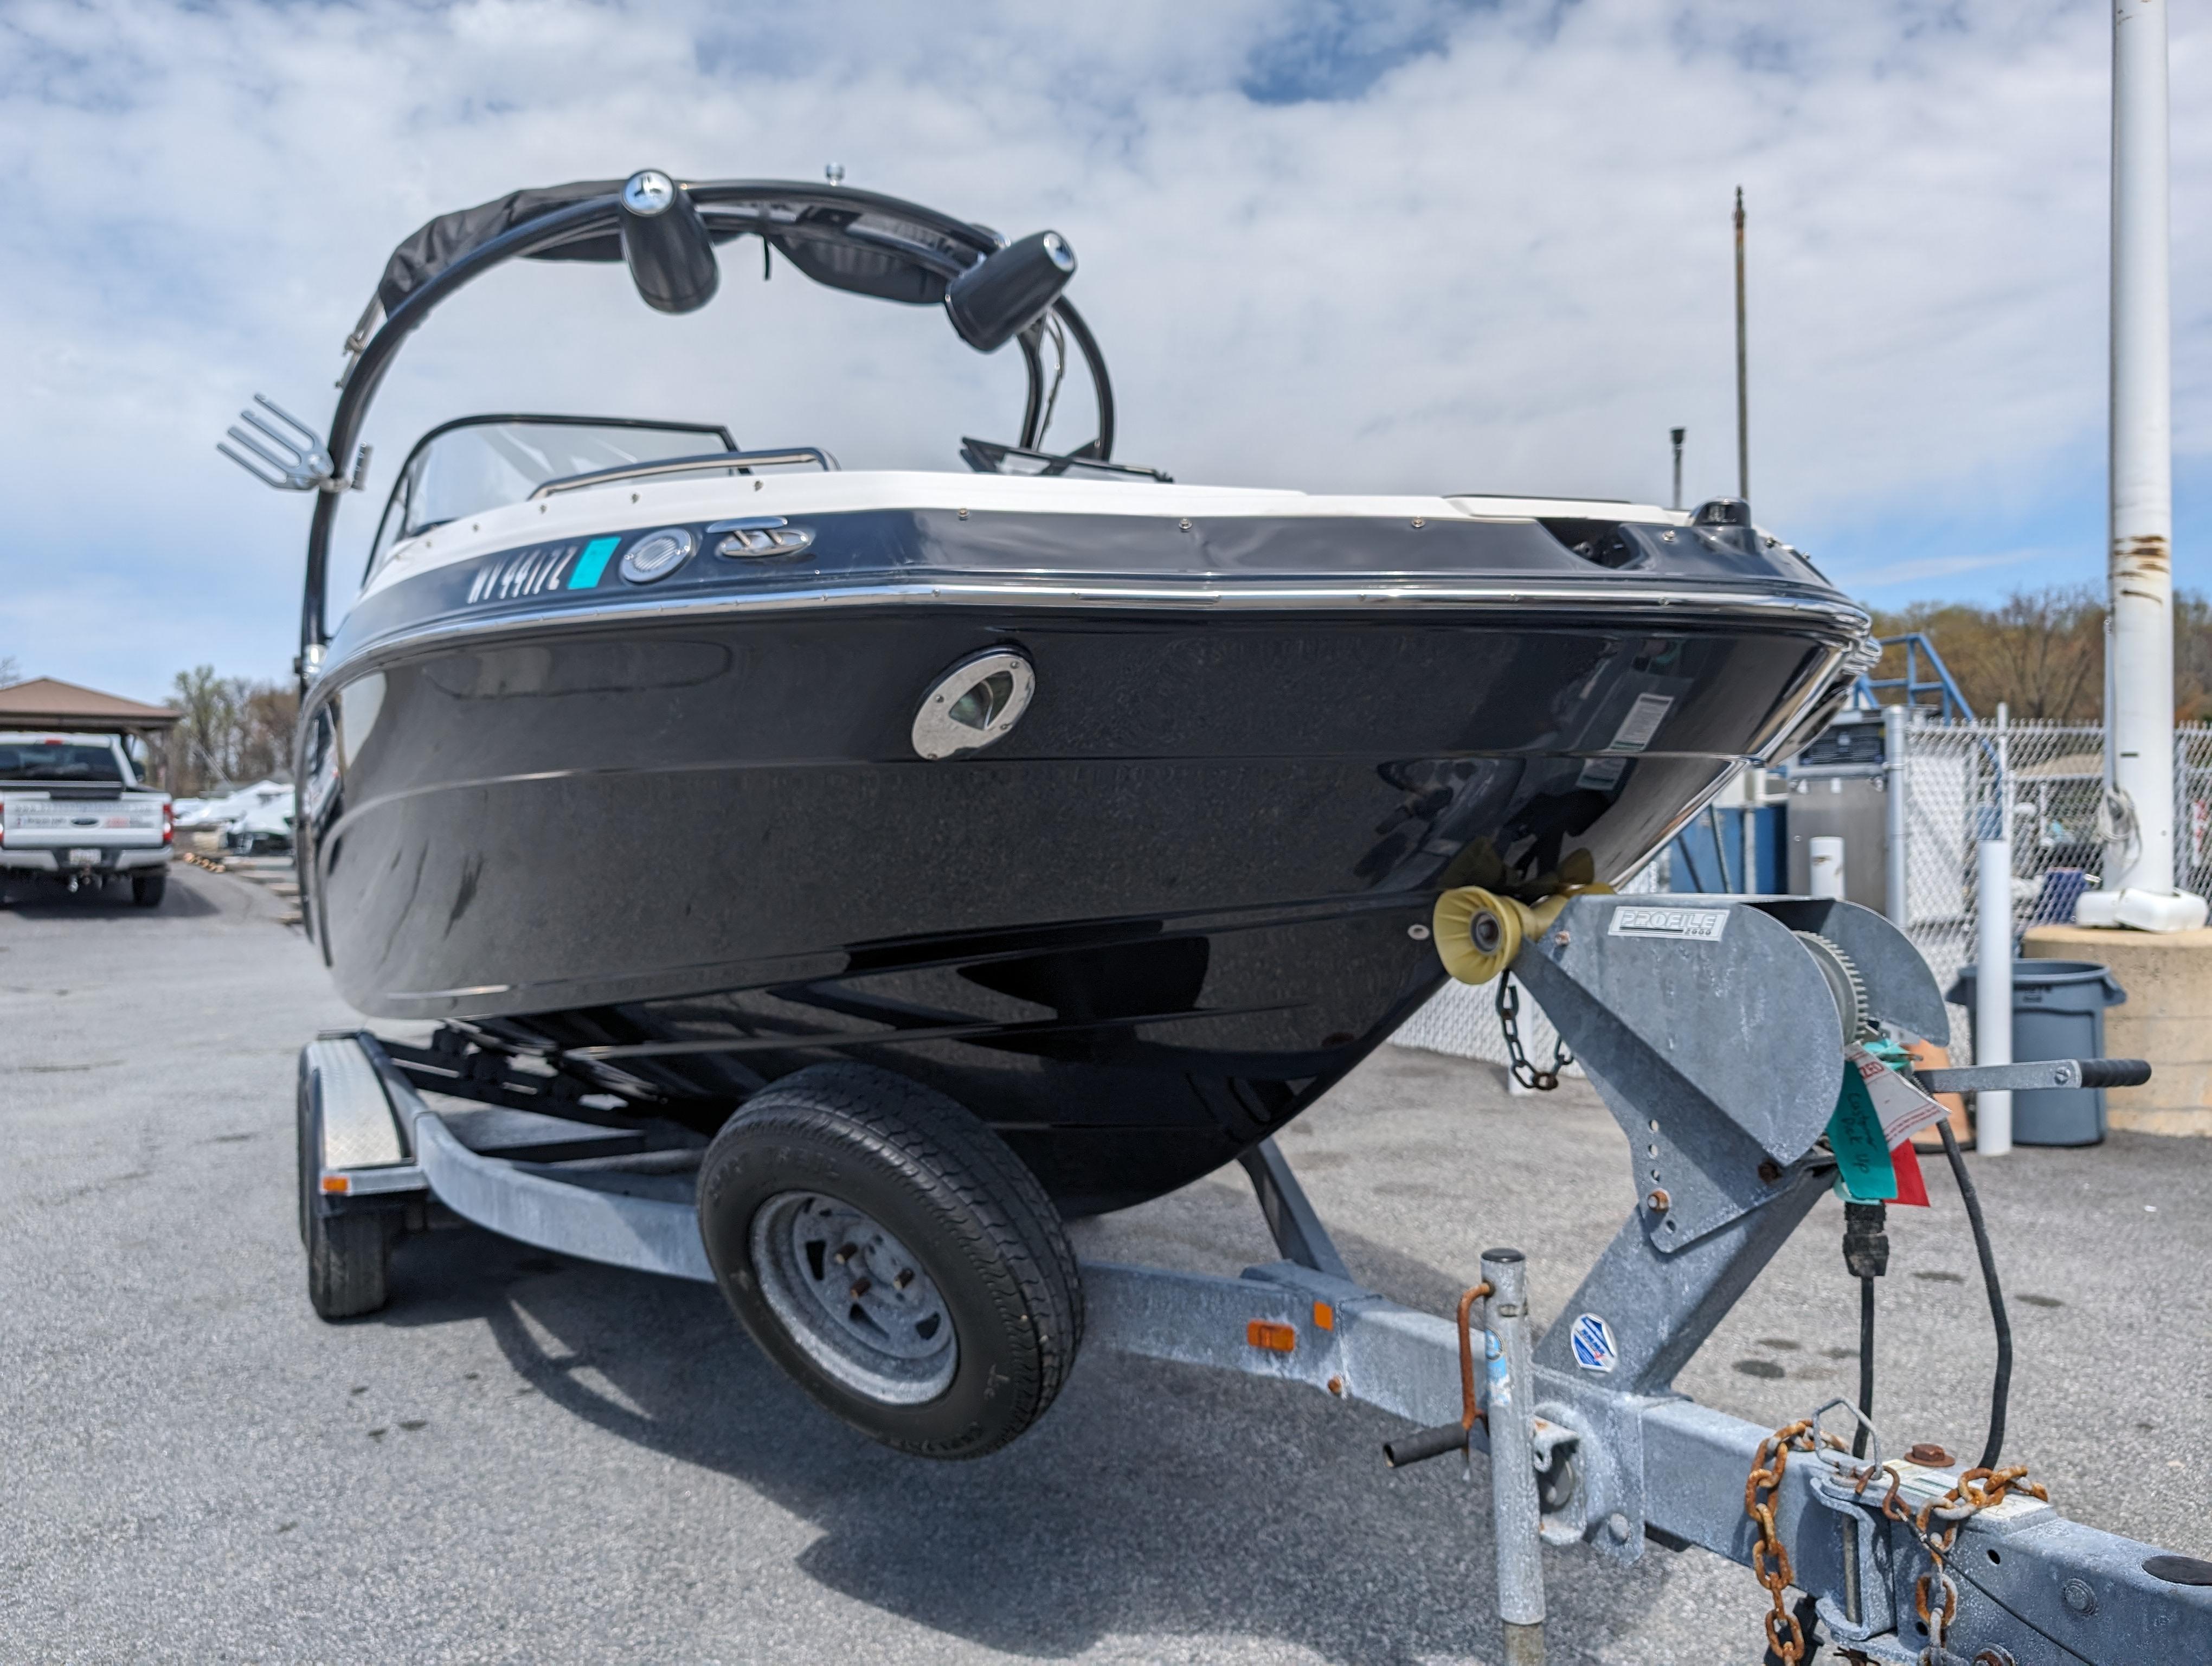 2014 Yamaha Boats 242 Limited S